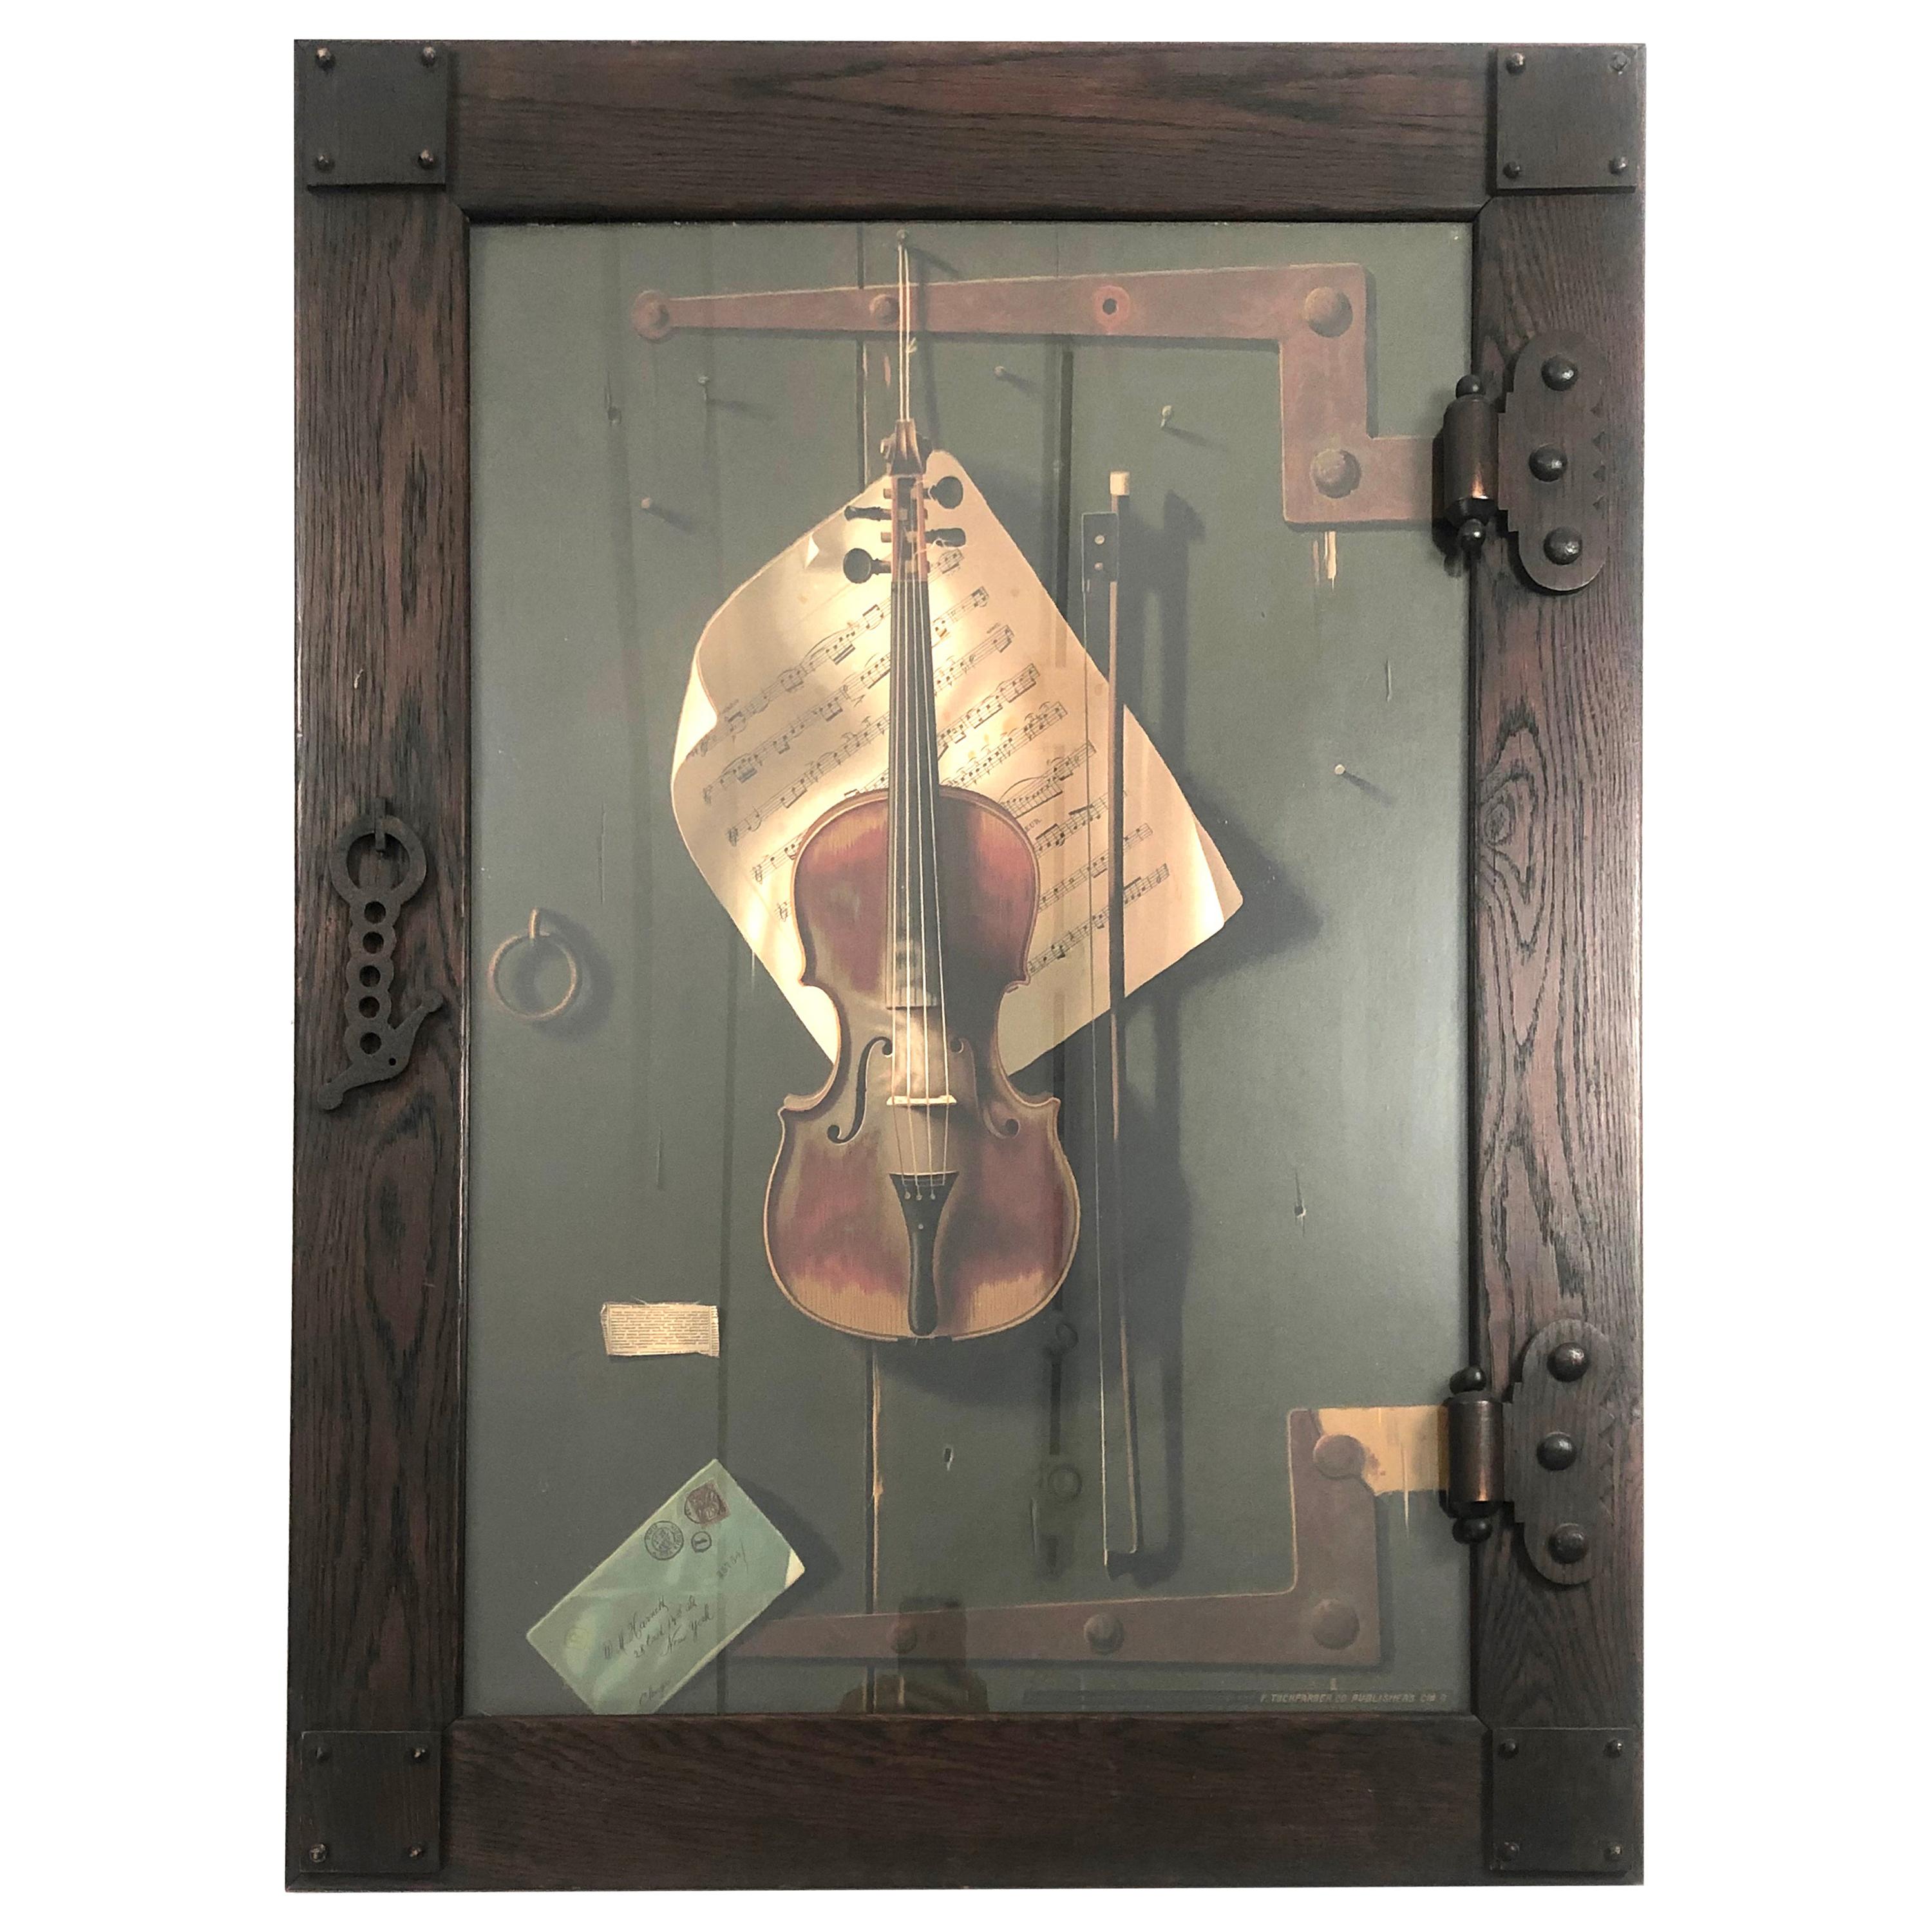 The Old Violin, William Michael Harnett Lithograph in Original Frame, circa 1887